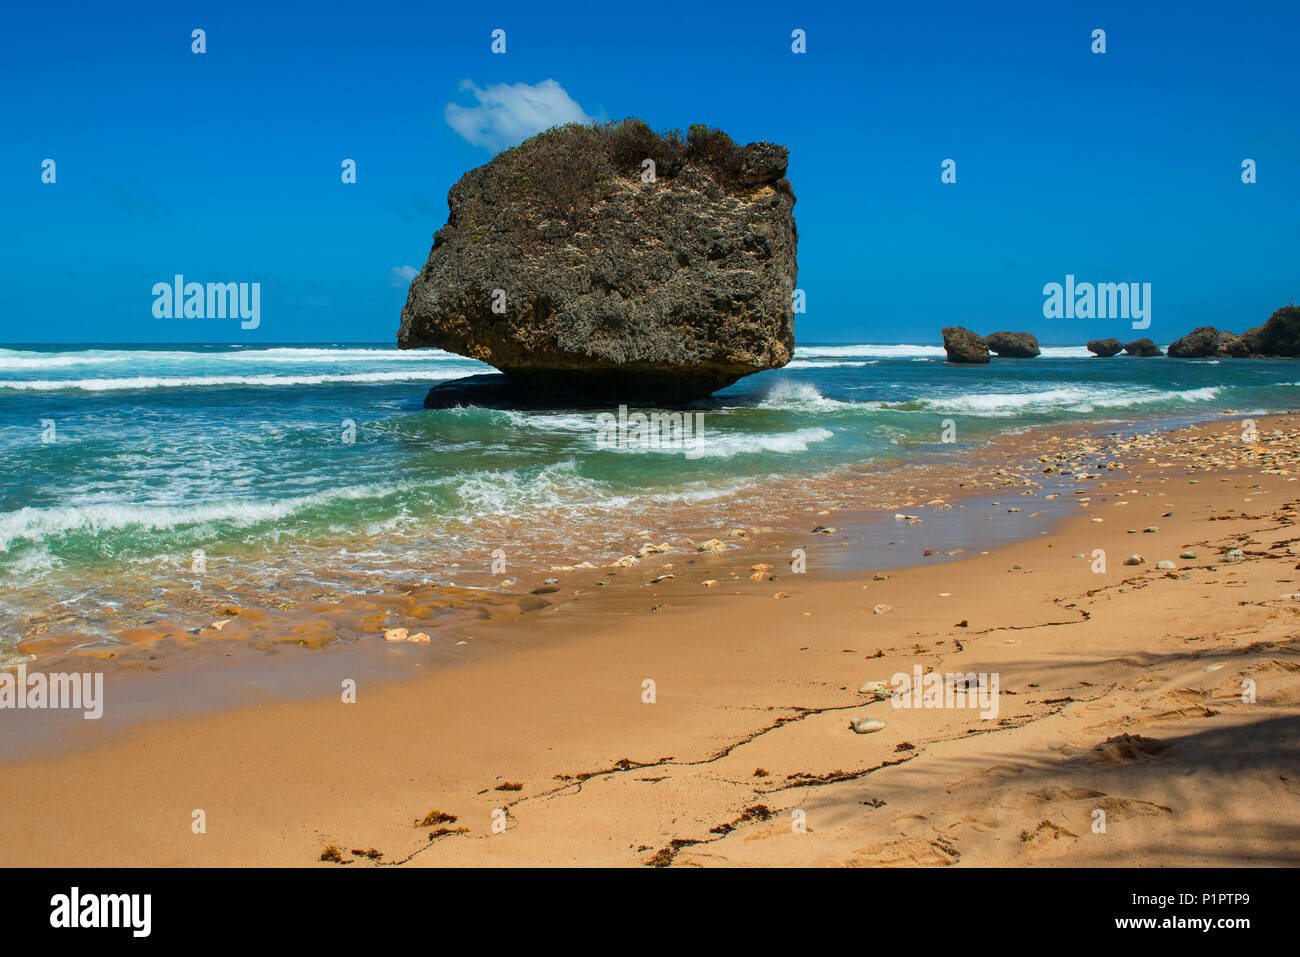 Grande roccia che è stata spezzata da una barriera corallina, sulla spiaggia di Betsabea; Barbados Foto Stock